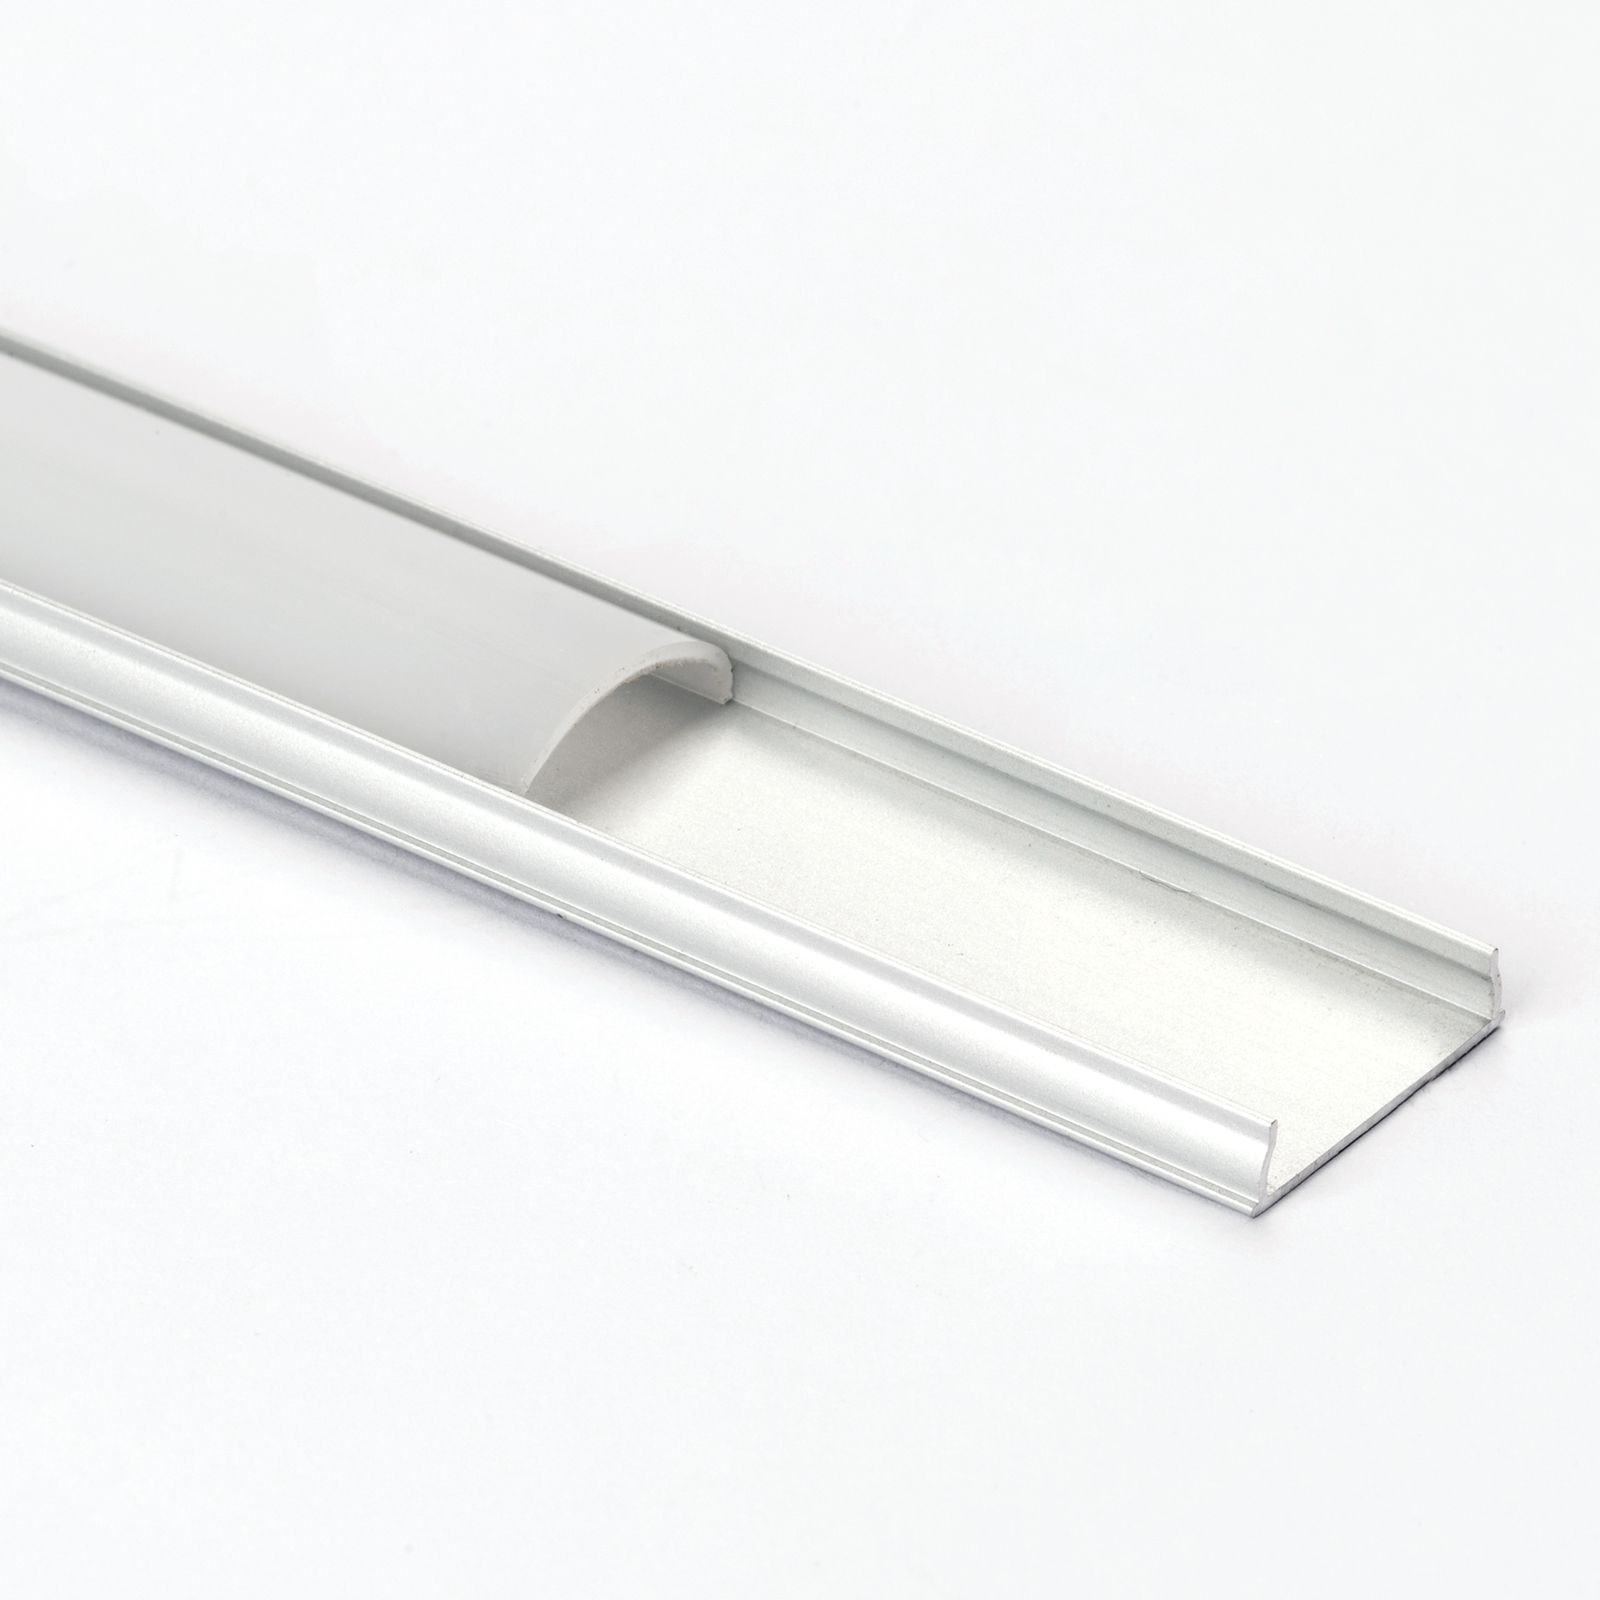 Alu Profil für LED DEEP Milchglas Streifen Lichtleiste Aluminium 2m DEEP  Milchglas, Leisten \ Alu Profile Für LED Streifen \ Alu Profile